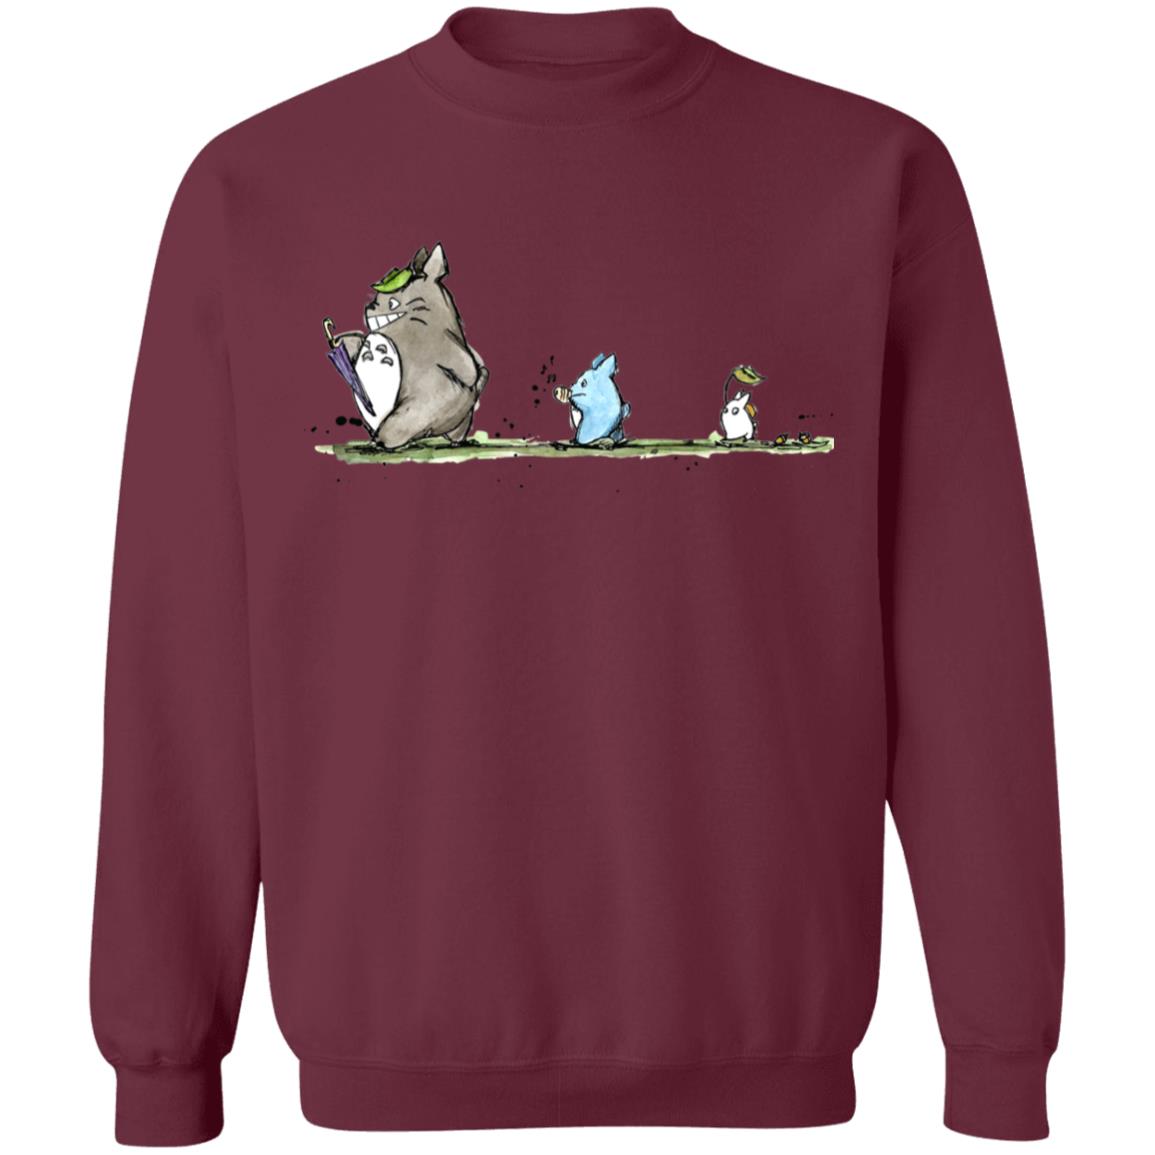 Totoro Family Parade Sweatshirt